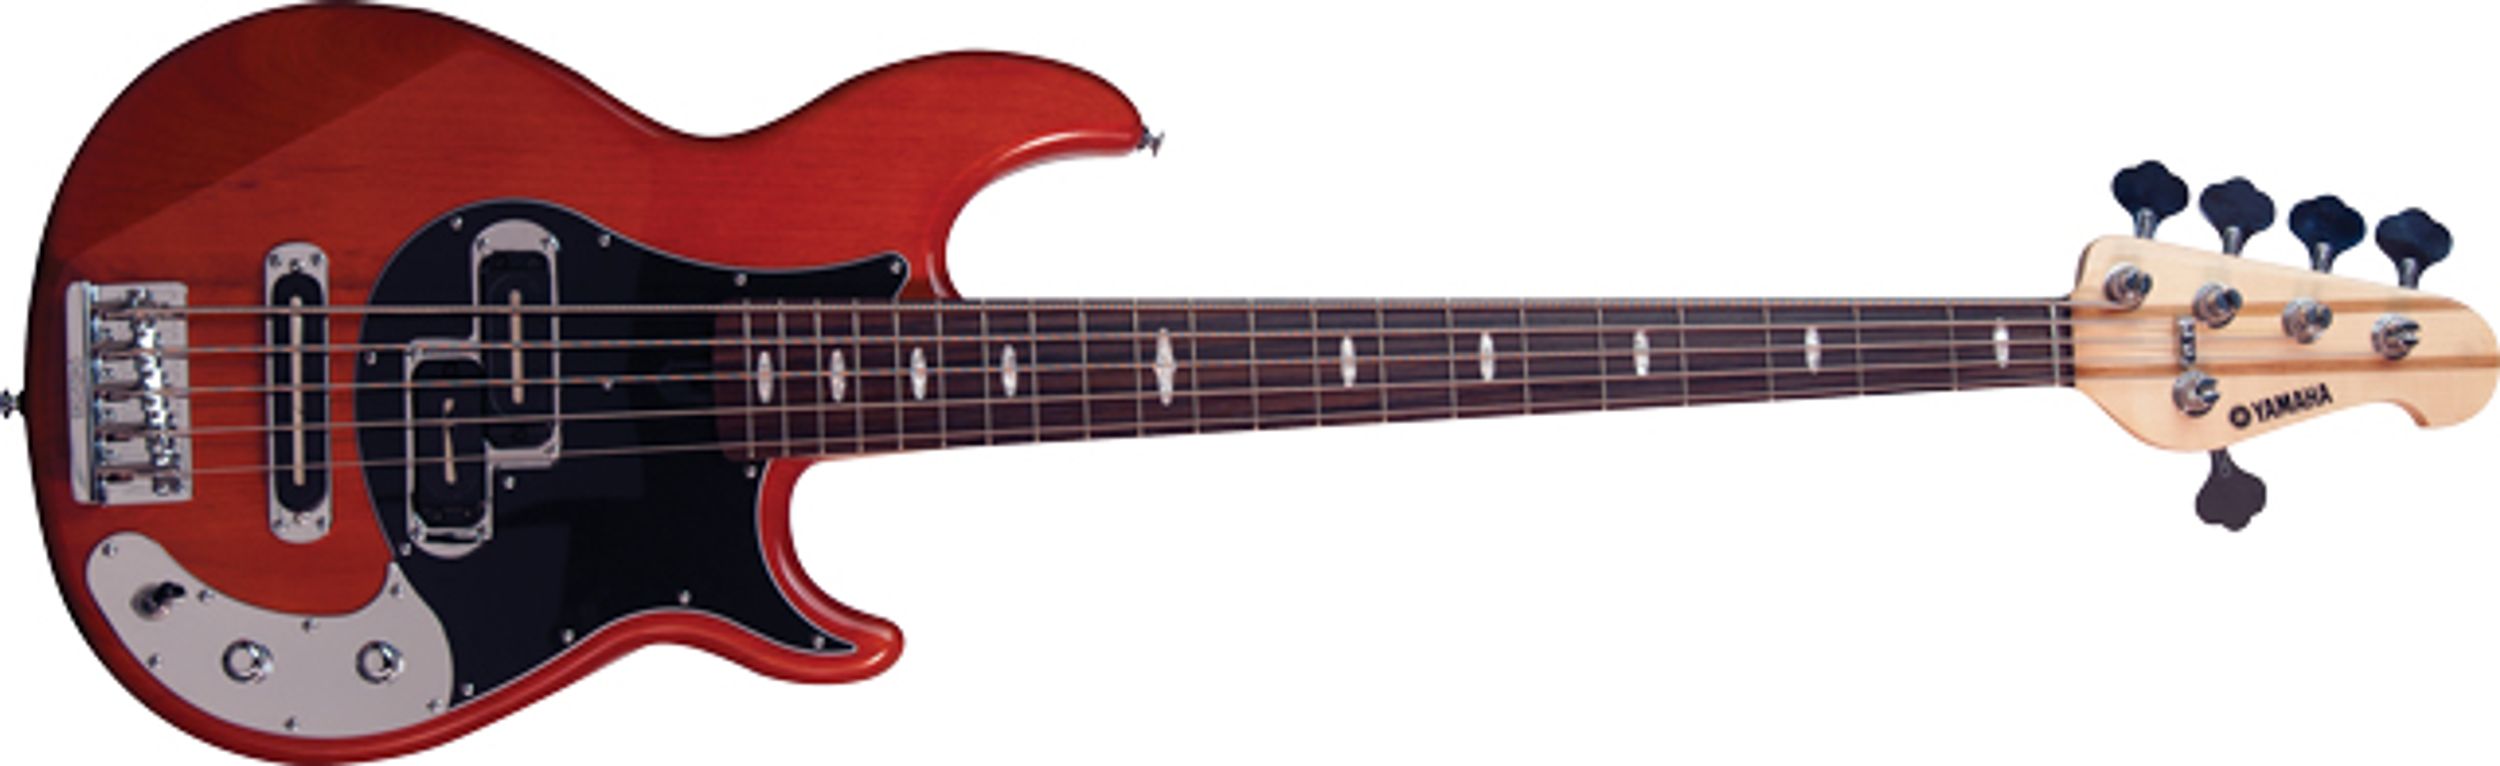 Yamaha BB1025X Bass Guitar Review